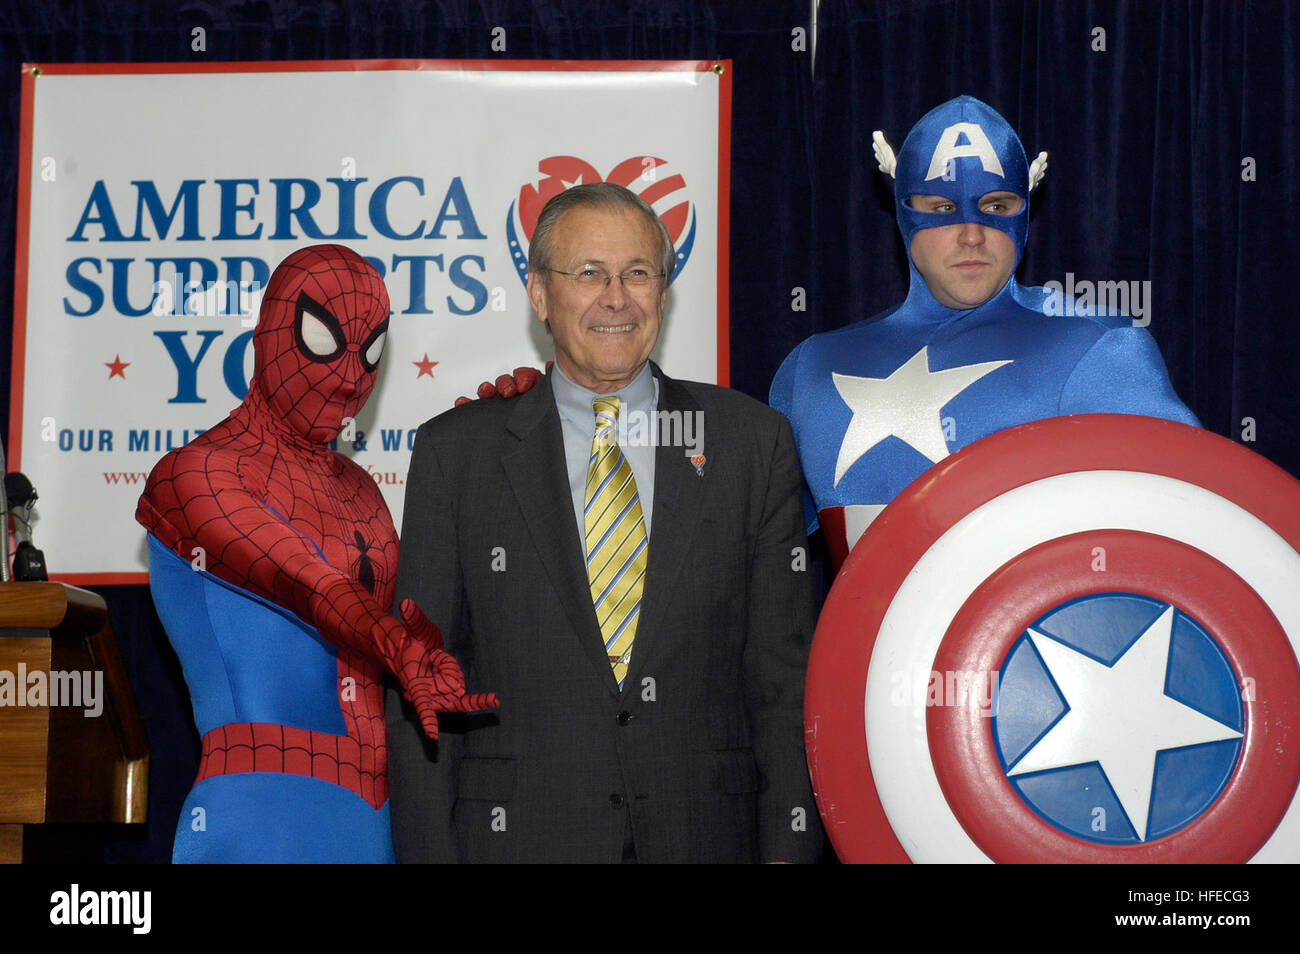 050428-N-0295M-002 Pentagone, Washington, D.C. (28 avril 2005) - Le ministre de la Défense Donald Rumsfeld pose avec les super-héros Spider-Man et Captain America lors de l'inauguration d'une bande dessinée qui sera distribué gratuitement aux forces américaines en Irak et dans le monde. Avec les vengeurs, Les Quatre Fantastiques, Spider-Man et d'autres héros Marvel, le comique aura un tirage d'un million d'exemplaires et être distribué par le échanges militaires. La première 150 000 exemplaires seront distribués au personnel au Moyen-Orient. La bande dessinée est une partie de "l'Amérique Latine, vous prend en charge, un ministère de la Défense Banque D'Images